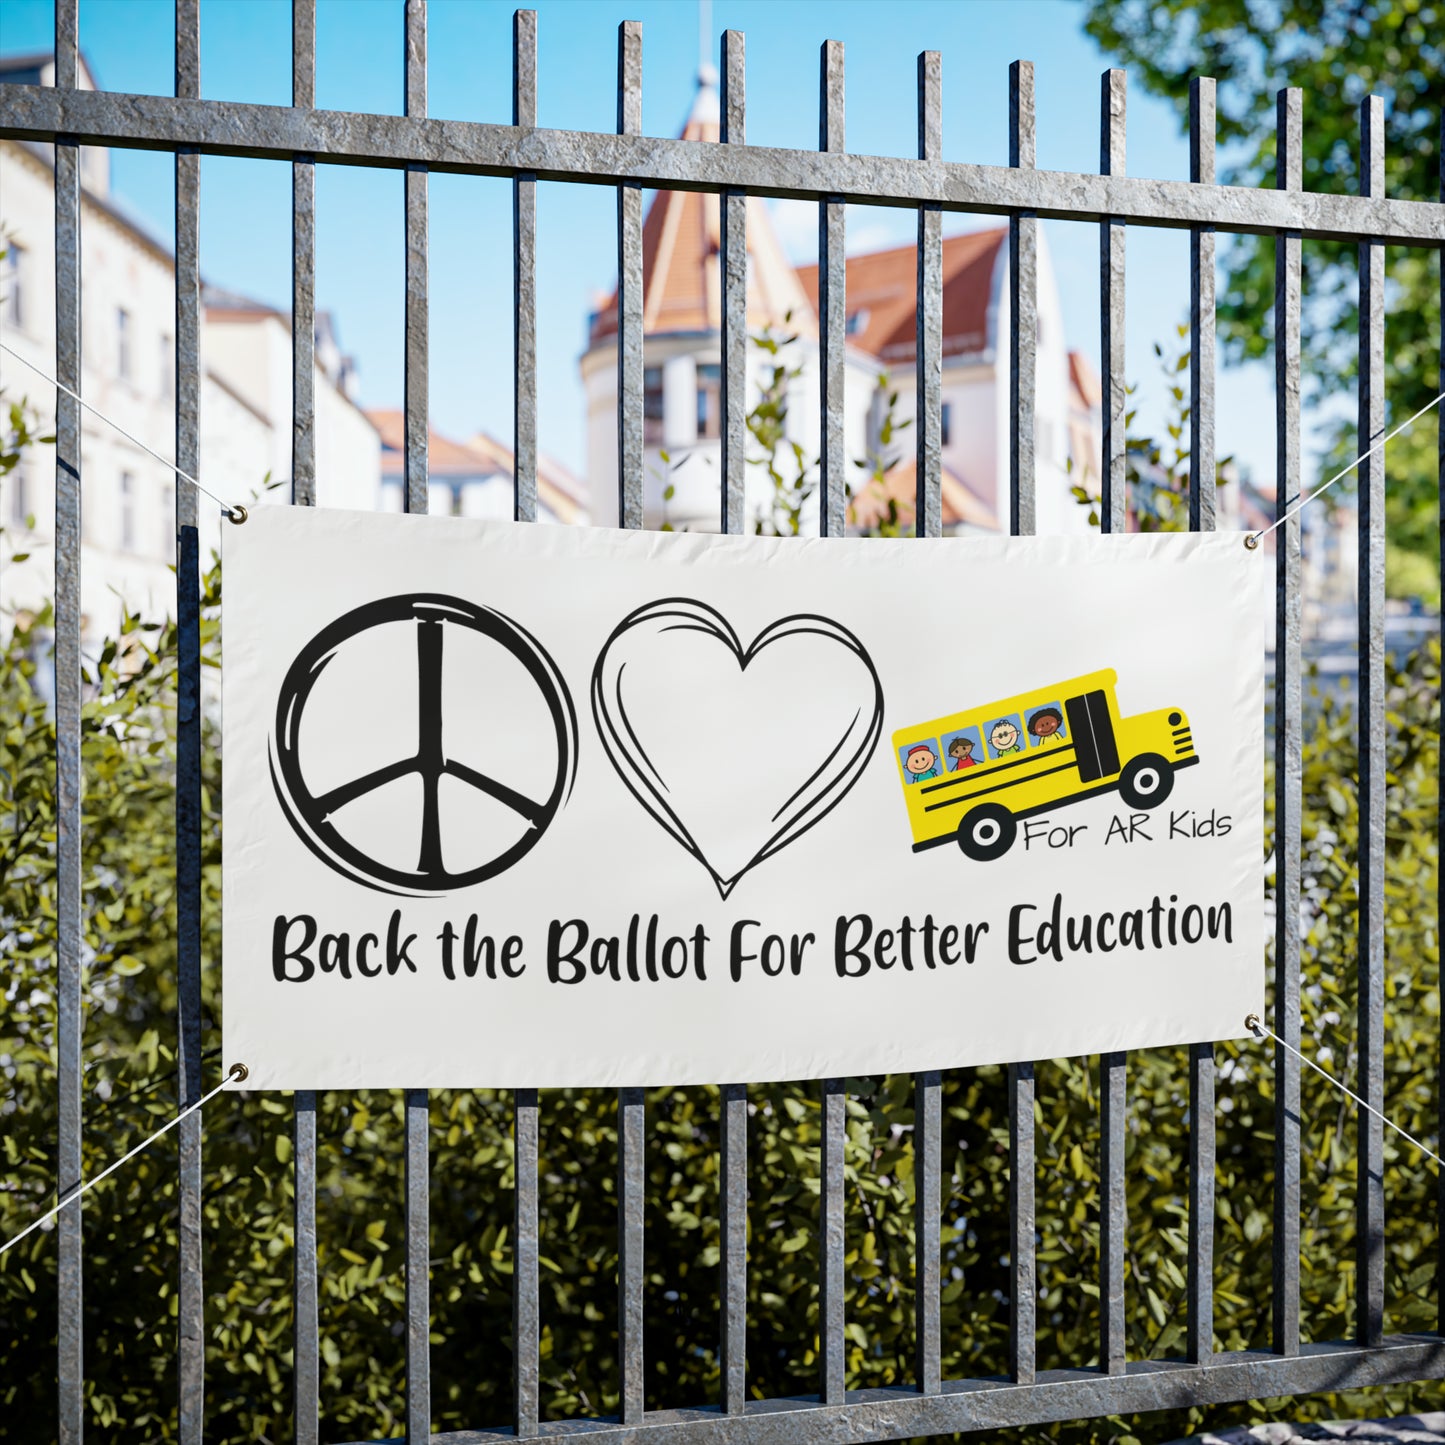 Back The Ballot For Better Education Vinyl Banners, AR Kids Vinyl Banners, School Bus Vinyl Banner